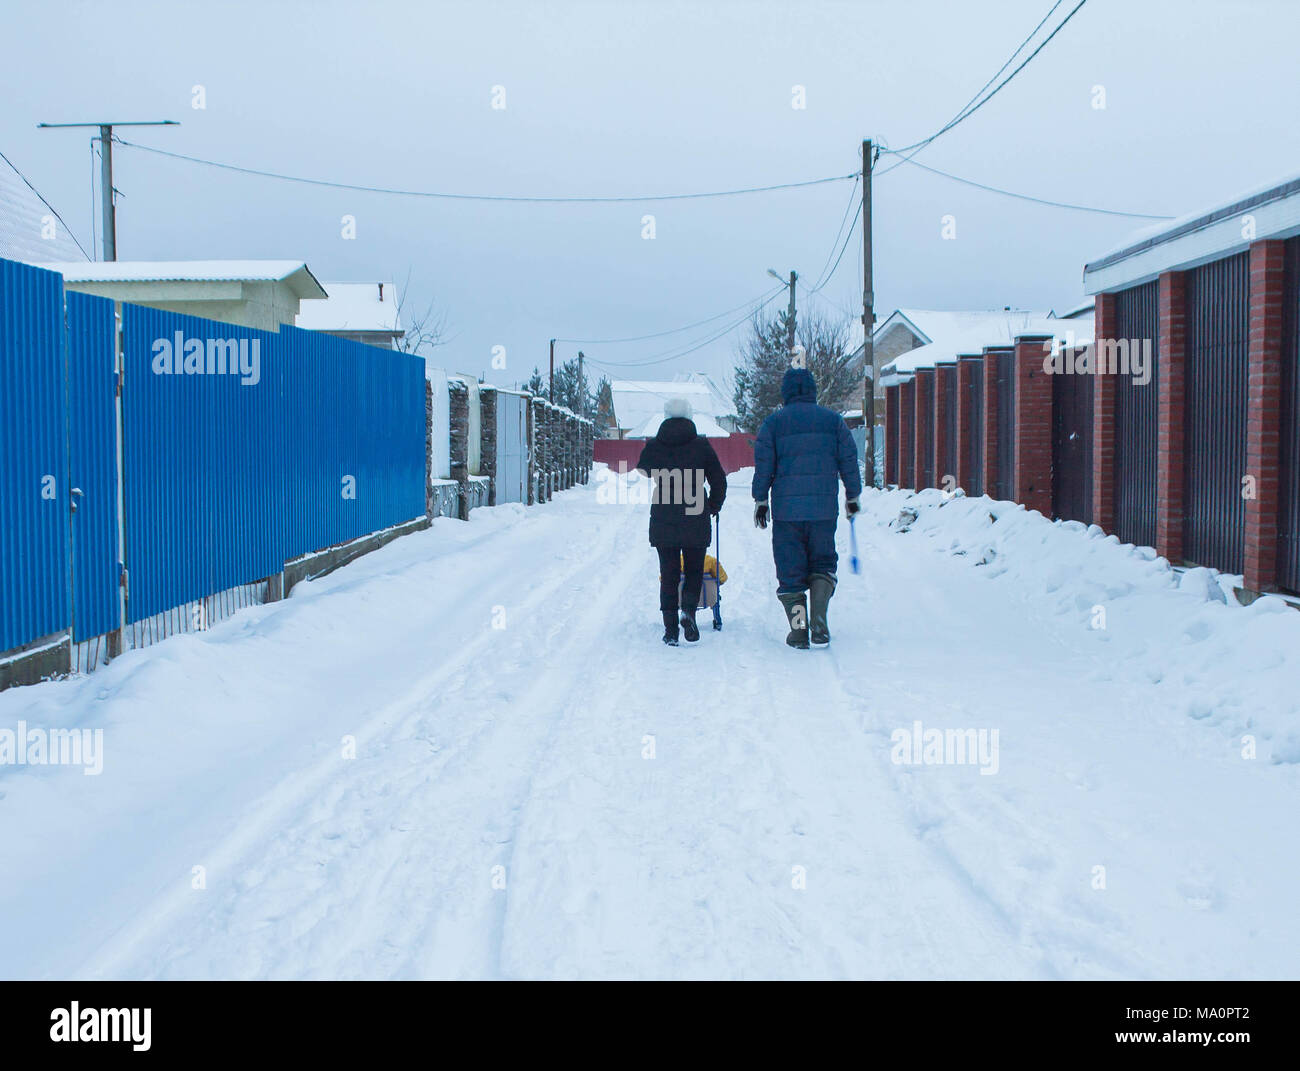 La famiglia è sulla strada del villaggio di inverno Foto Stock